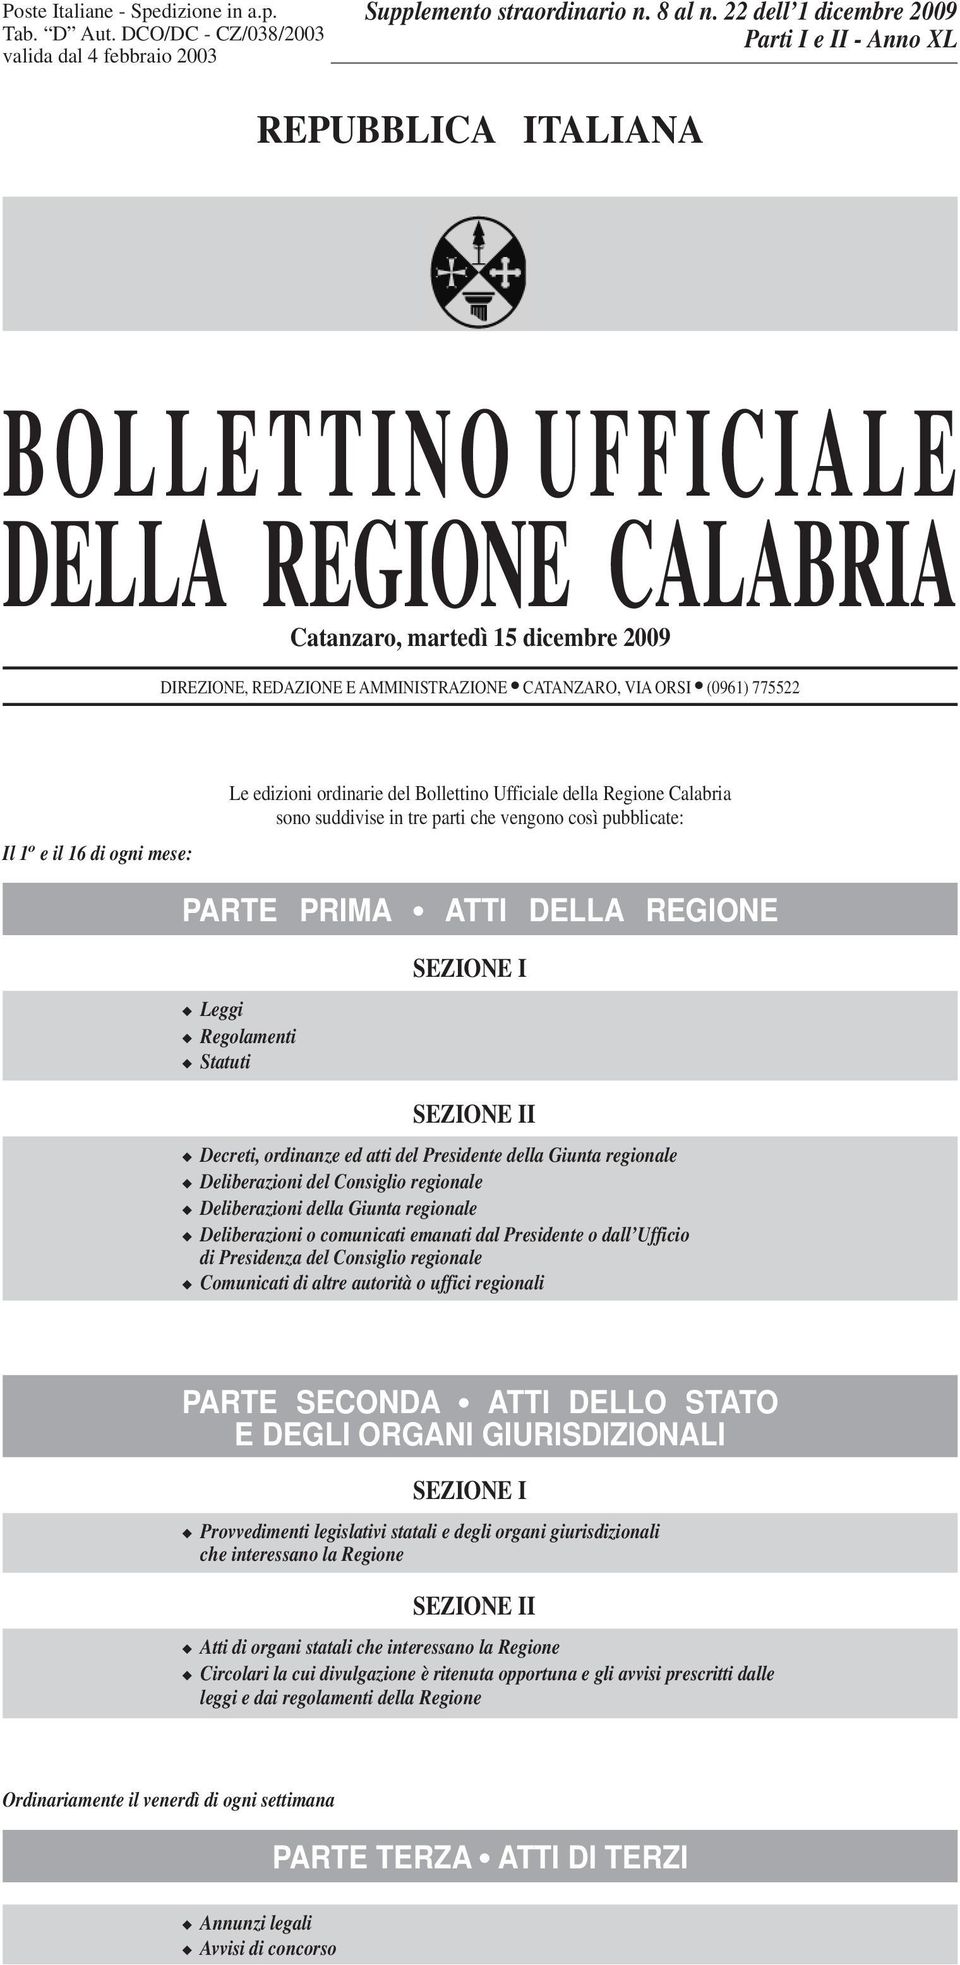 ORSI (0961) 775522 Il 1 o e il 16 di ogni mese: Le edizioni ordinarie del Bollettino Ufficiale della Regione Calabria sono suddivise in tre parti che vengono così pubblicate: PARTE PRIMA ATTI DELLA